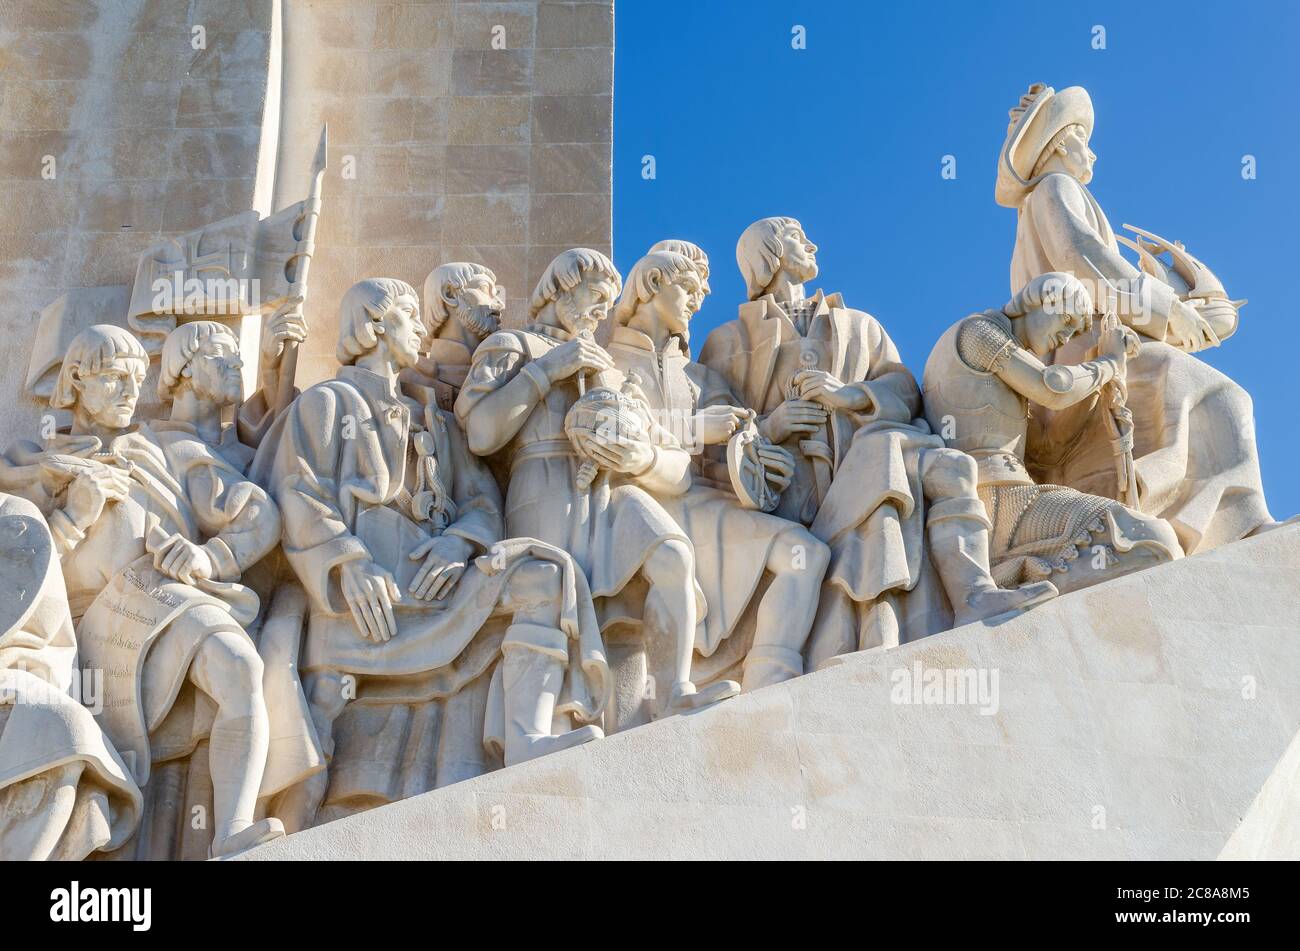 Padrao dos descobrimentos, monumento alle scoperte portoghesi a lisbona, con cielo azzurro e luce solare. Particolare delle figure del monumento Foto Stock